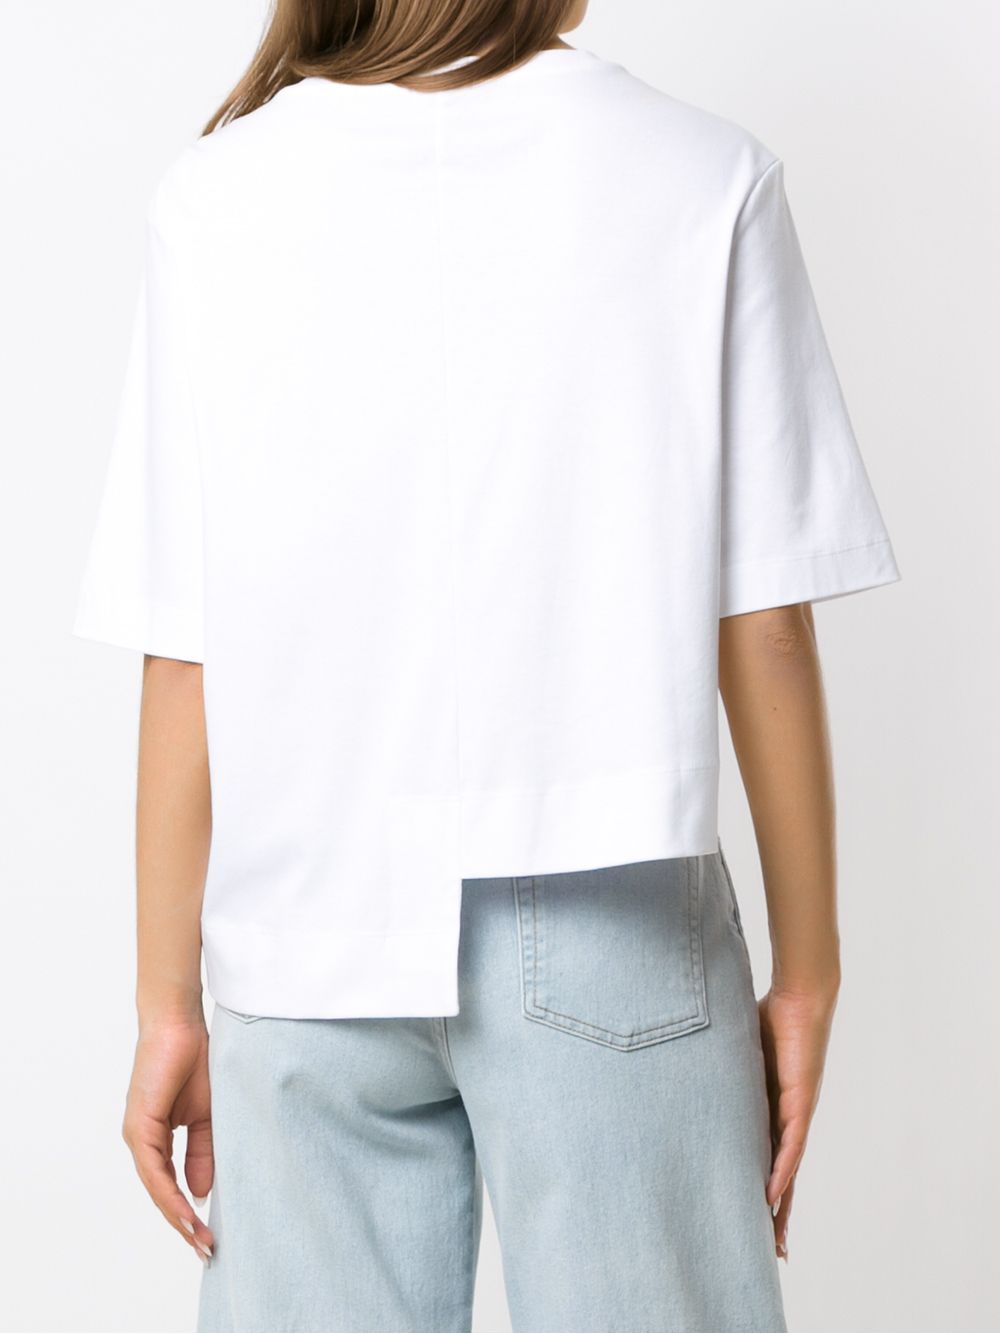 фото Osklen однотонная блузка Unequal Soft Cotton